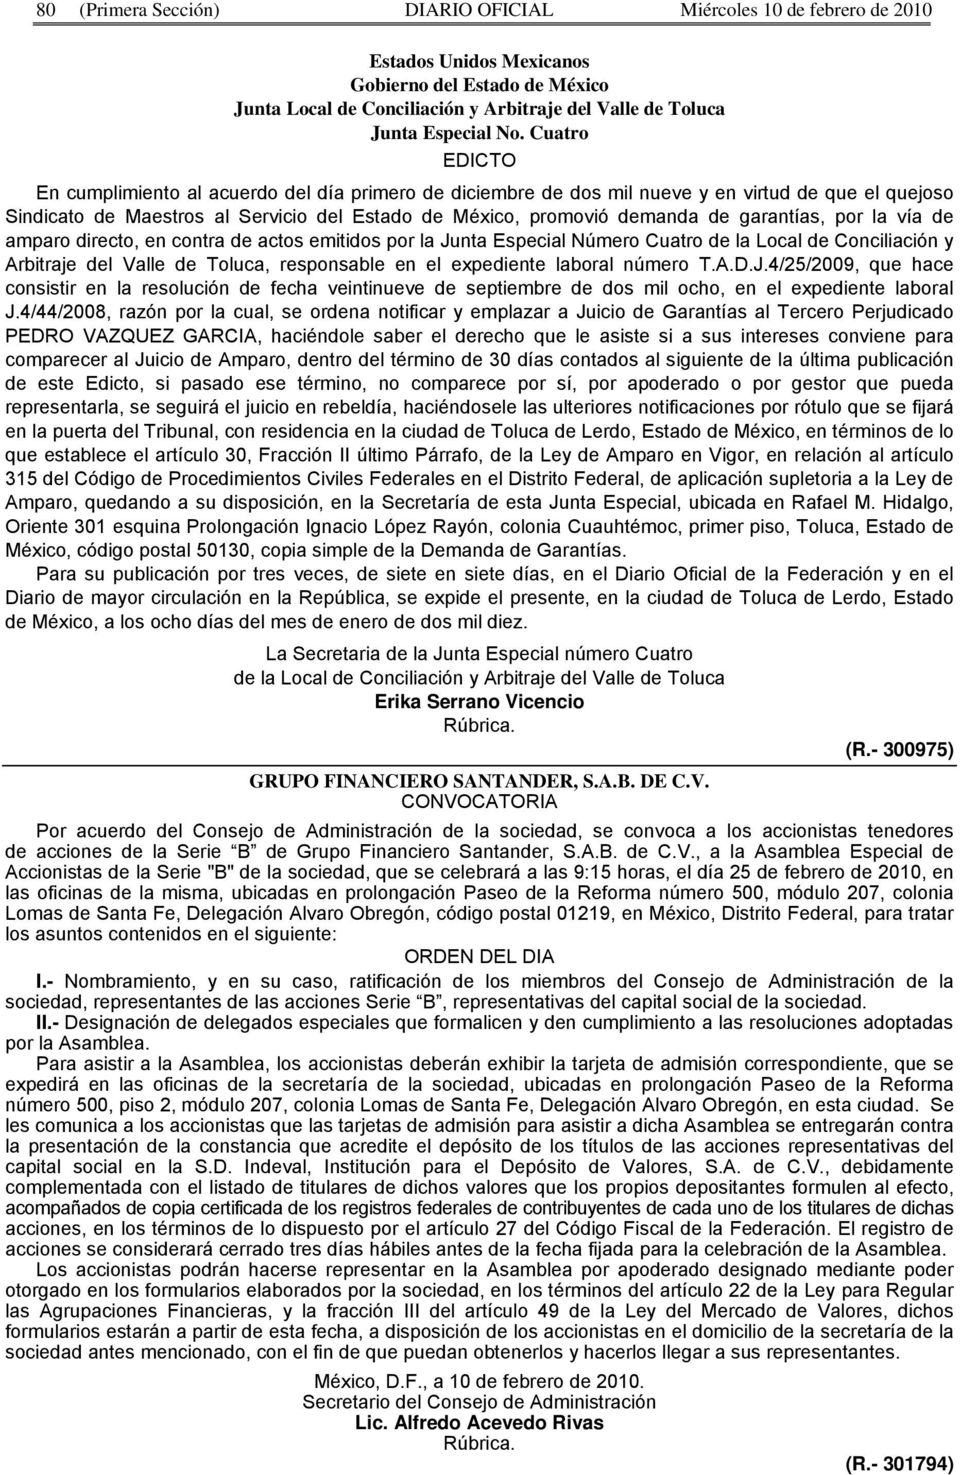 garantías, por la vía de amparo directo, en contra de actos emitidos por la Junta Especial Número Cuatro de la Local de Conciliación y Arbitraje del Valle de Toluca, responsable en el expediente